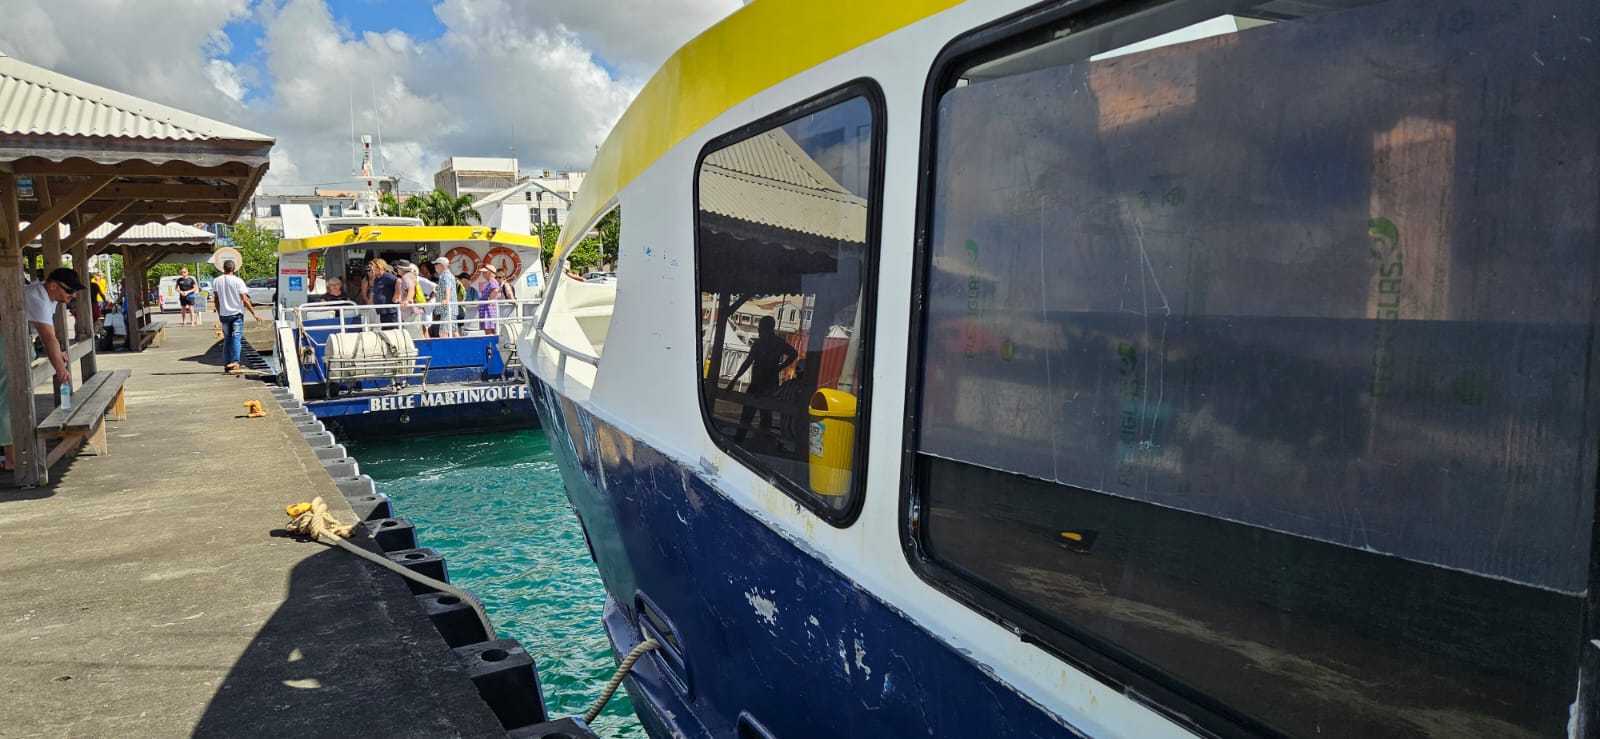     Vedettes Tropicales : Martinique Transport relance les négociations

